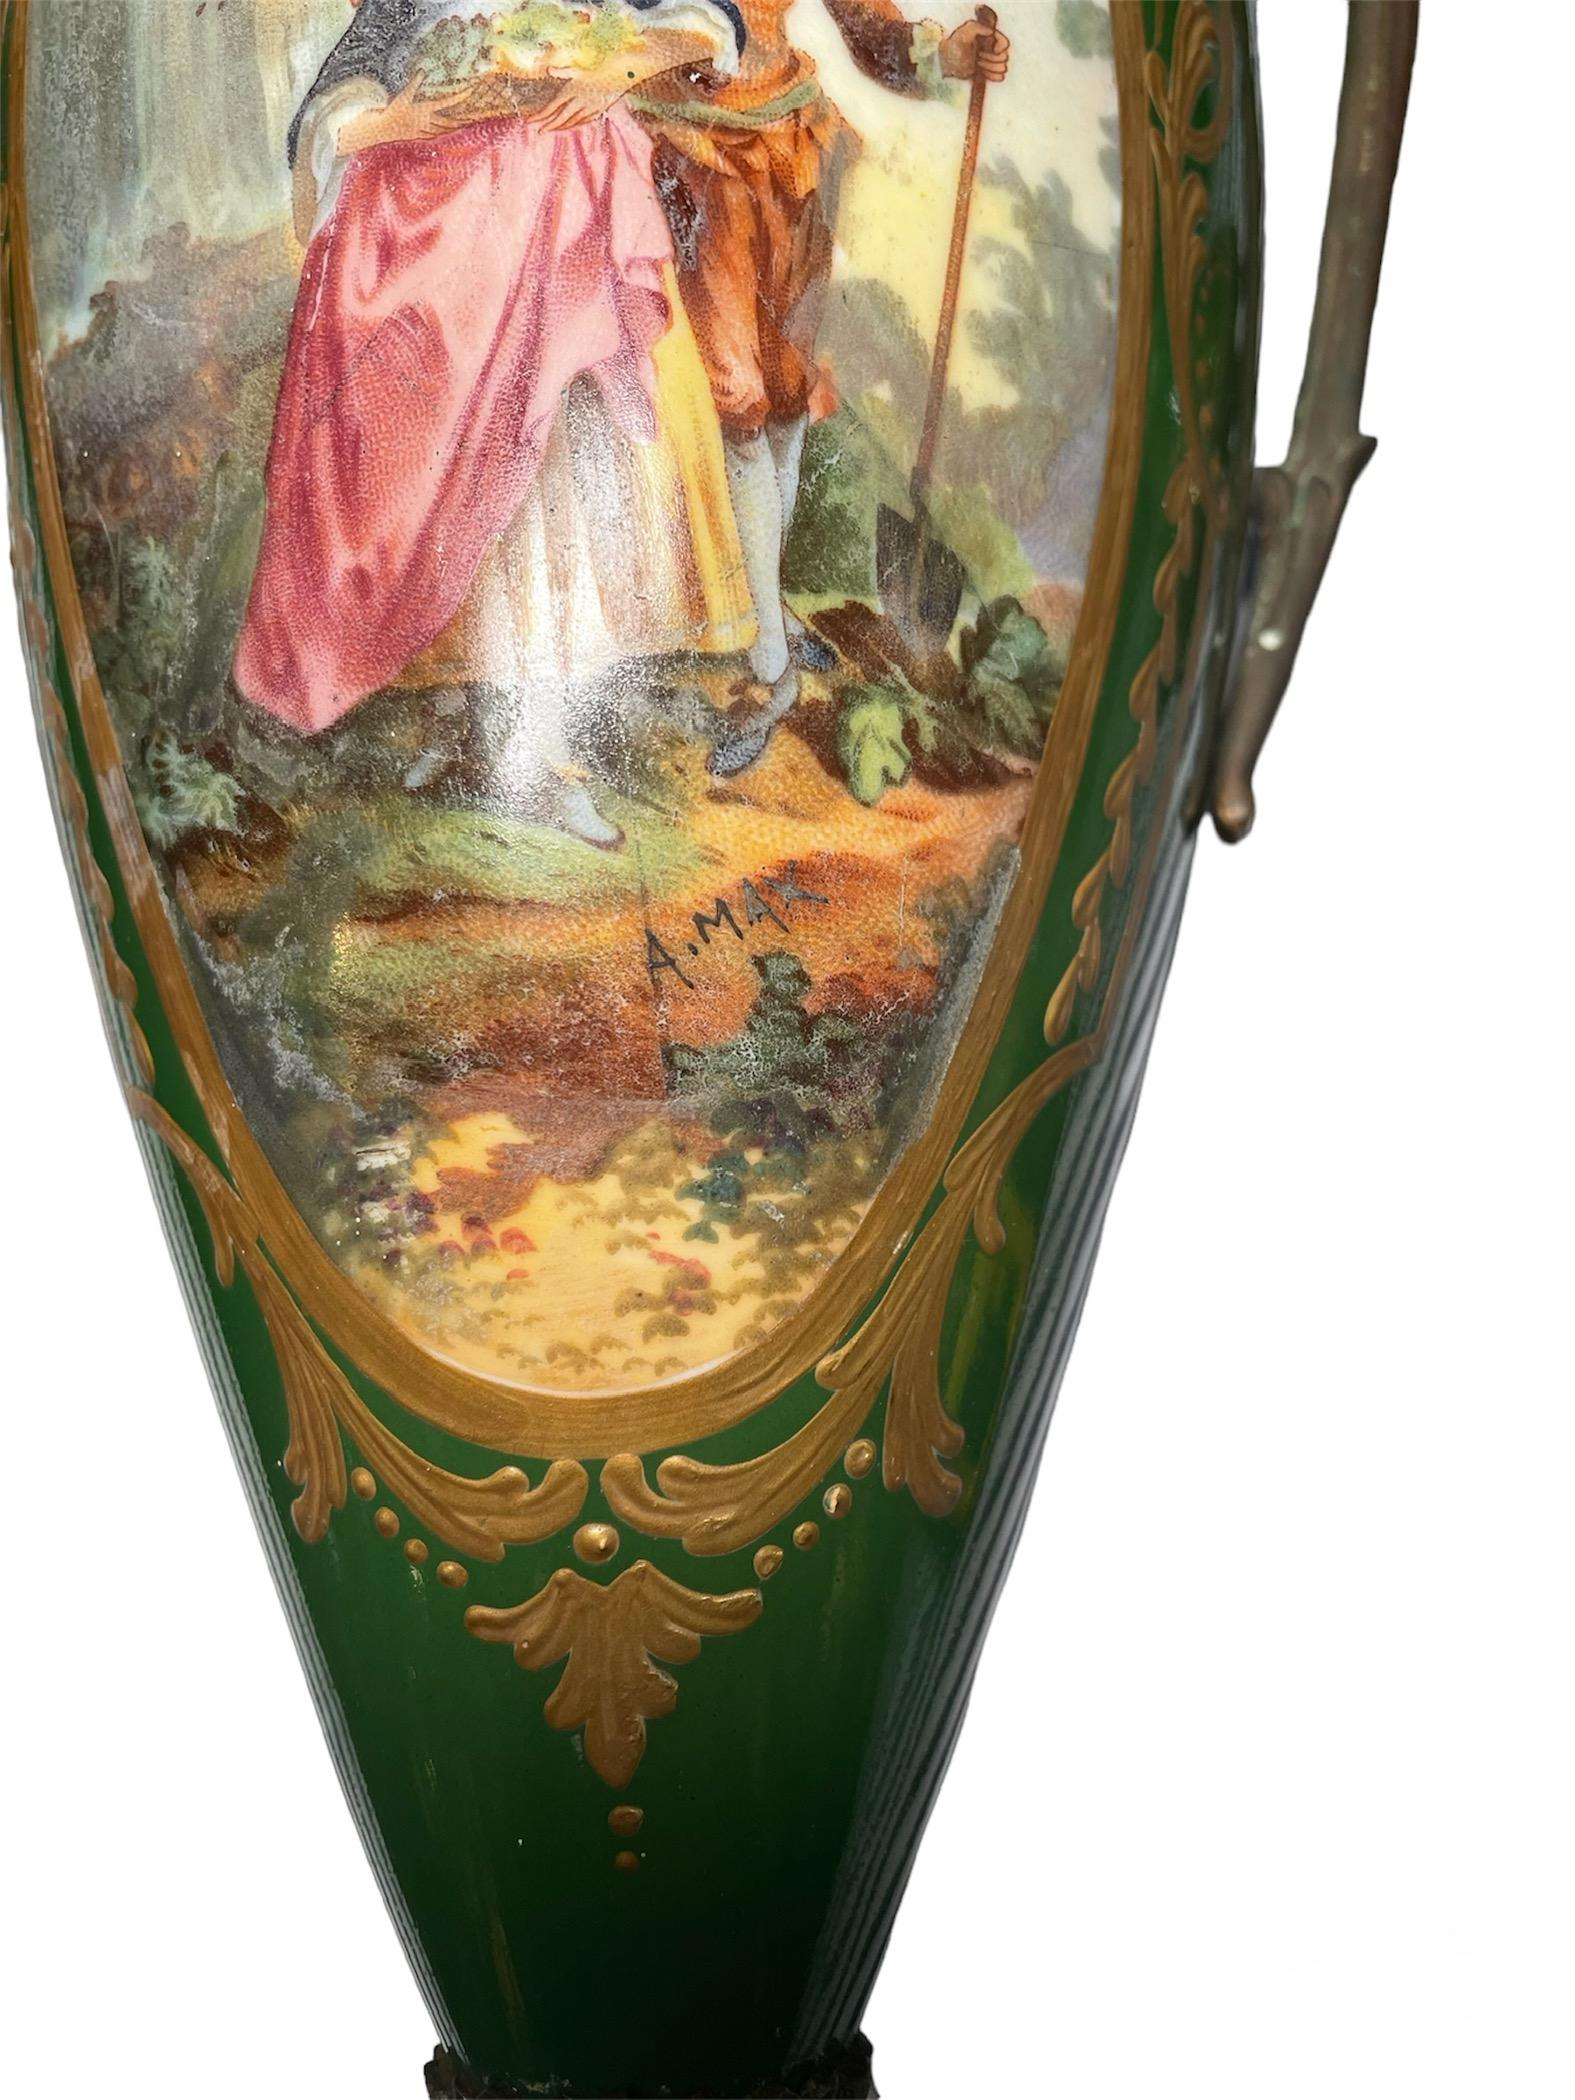 Il s'agit d'une paire de vases urnes en porcelaine de style Sèvres, peints à la main en bronze doré et vert, et signés. Chacune d'entre elles représente une scène de jeunes couples de paysans. L'une d'entre elles représente une jeune fille portant